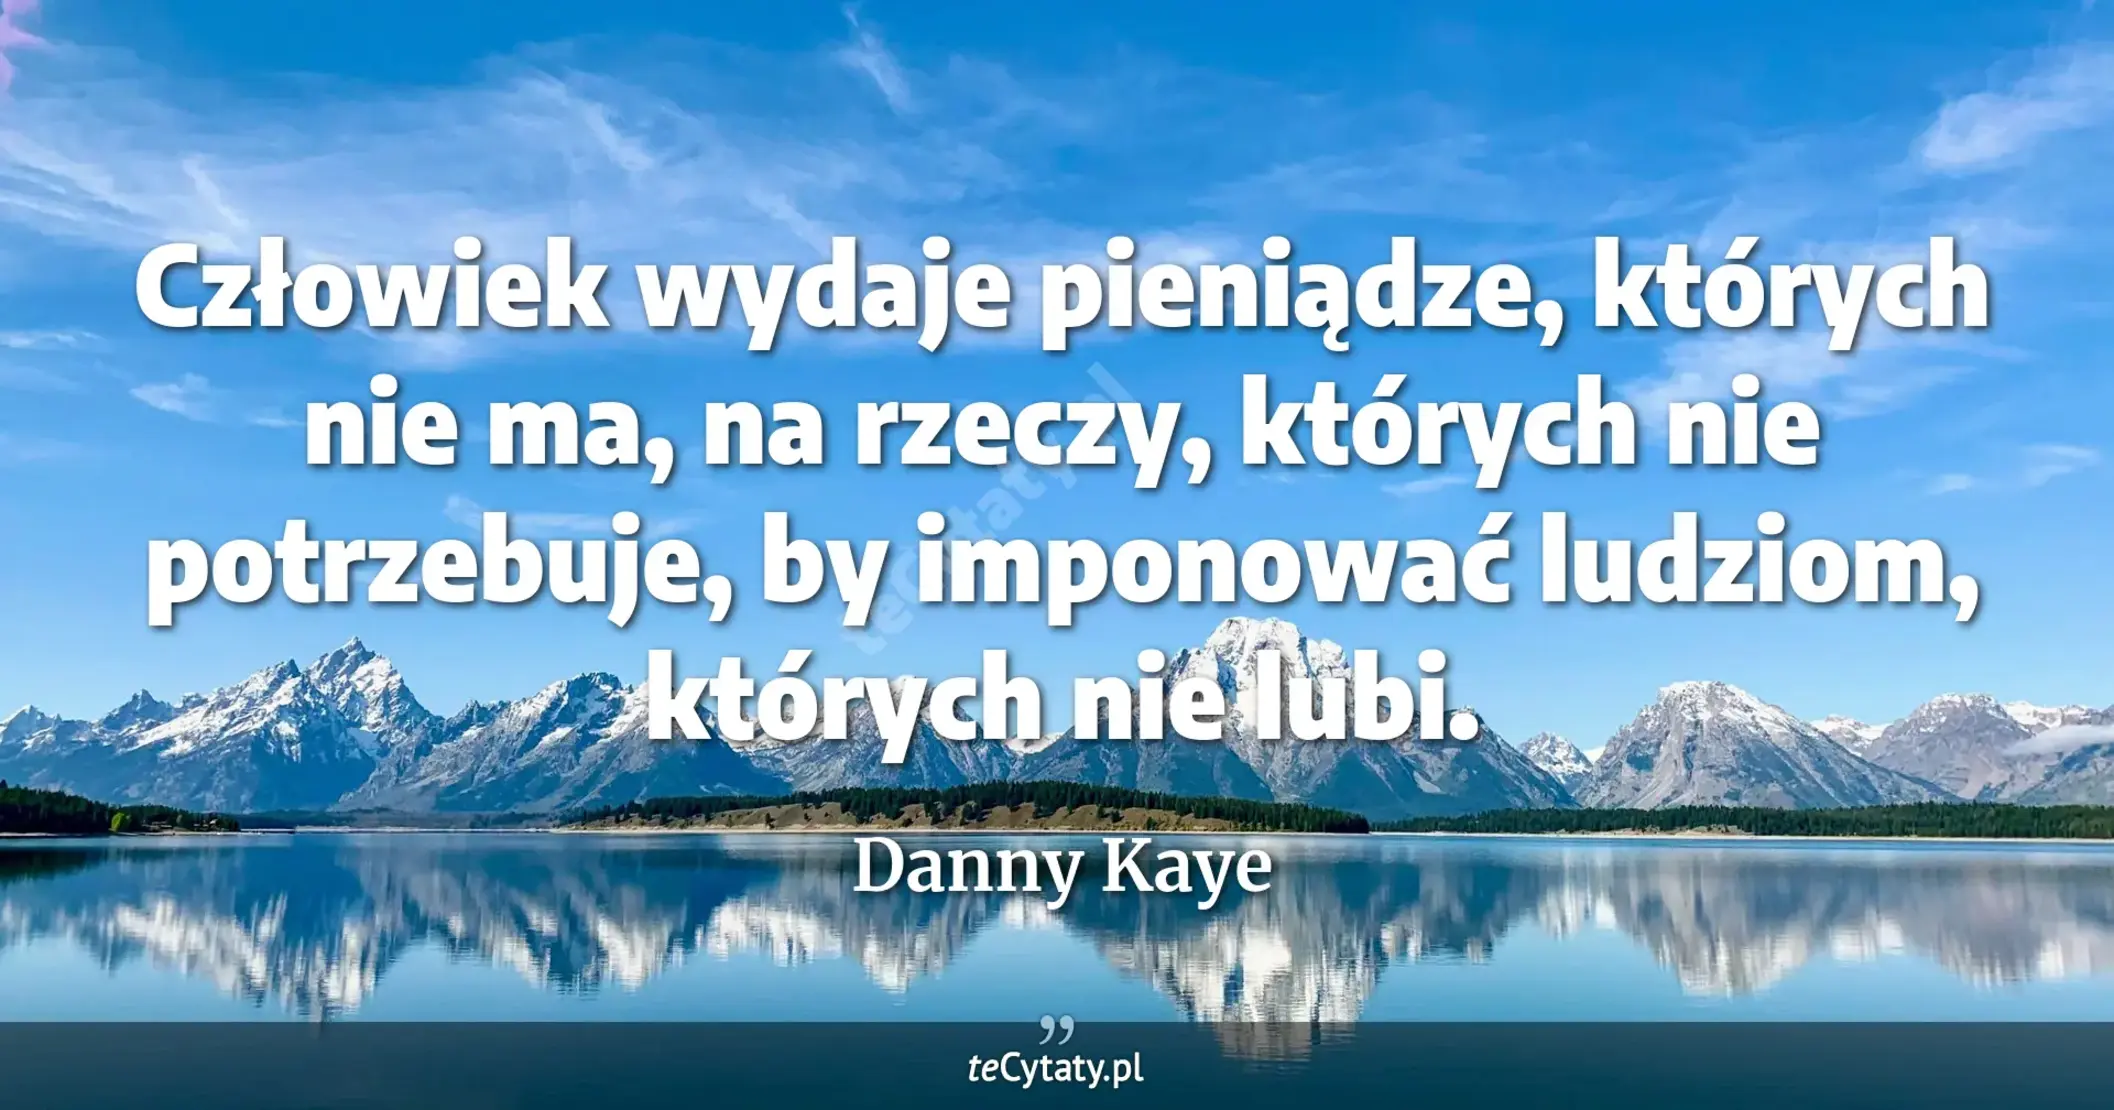 Człowiek wydaje pieniądze, których nie ma, na rzeczy, których nie potrzebuje, by imponować ludziom, których nie lubi. - Danny Kaye